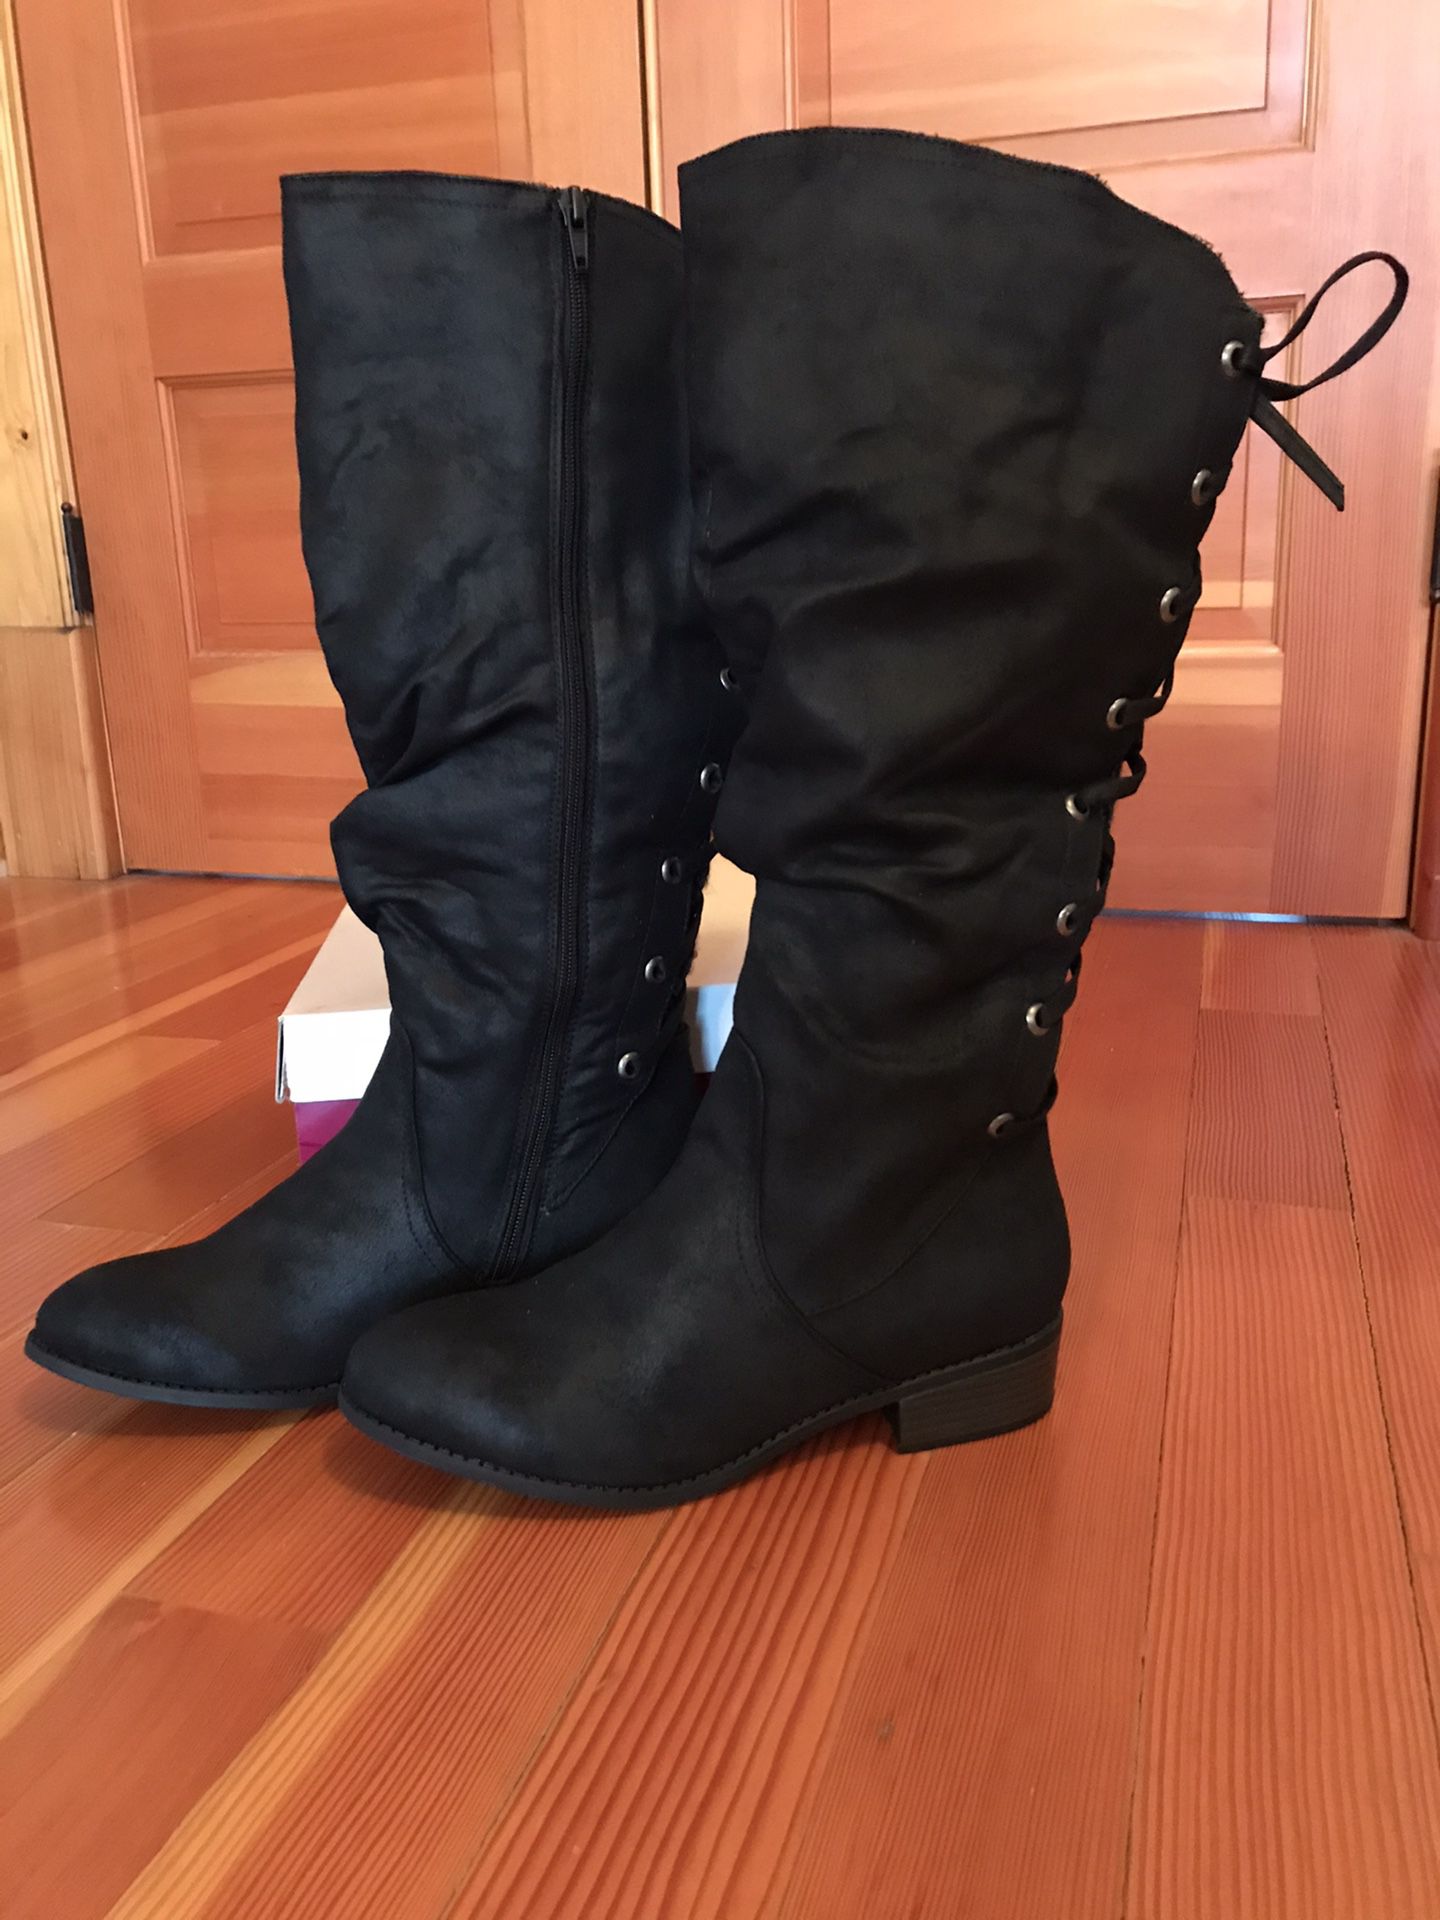 Women’s Tall Black Boots Size 9.5 NIB